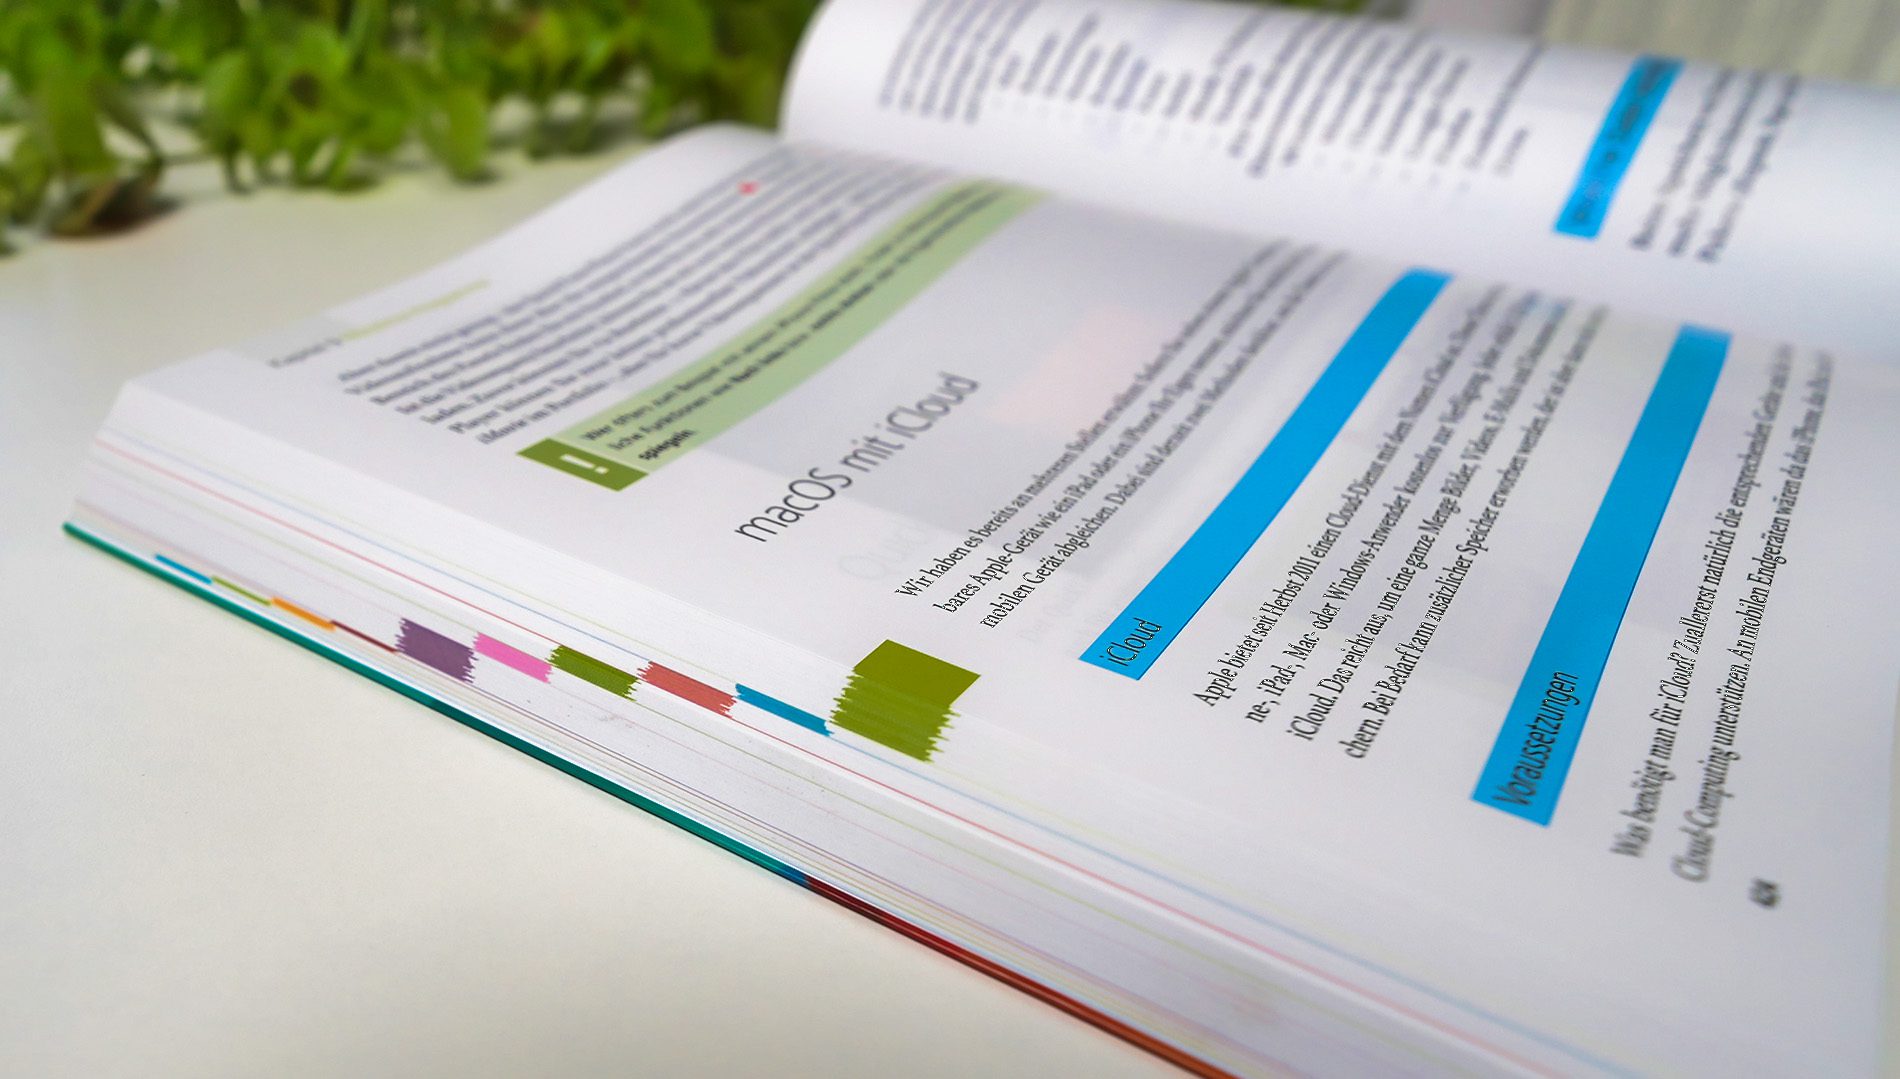 Die Farbcodierung an der Seite hilft, wenn man schnell zu einem bestimmten Kapitel springen möchte (Fotos: Sir Apfelot).